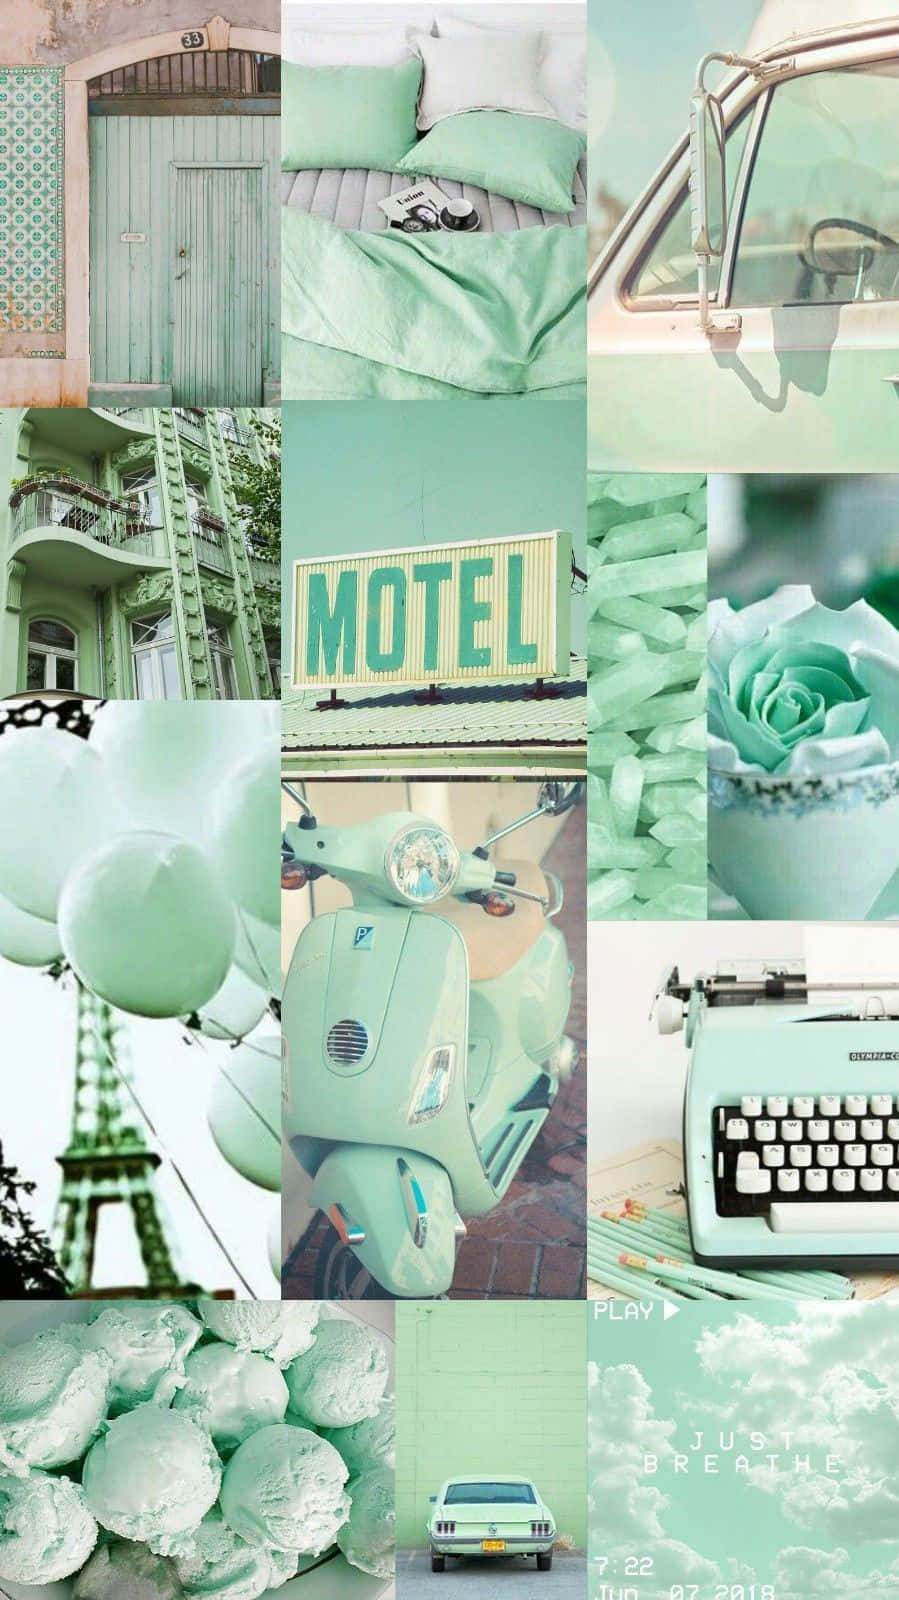 Uncollage De Imágenes De Un Motel, Una Máquina De Escribir Y Una Máquina De Escribir Fondo de pantalla